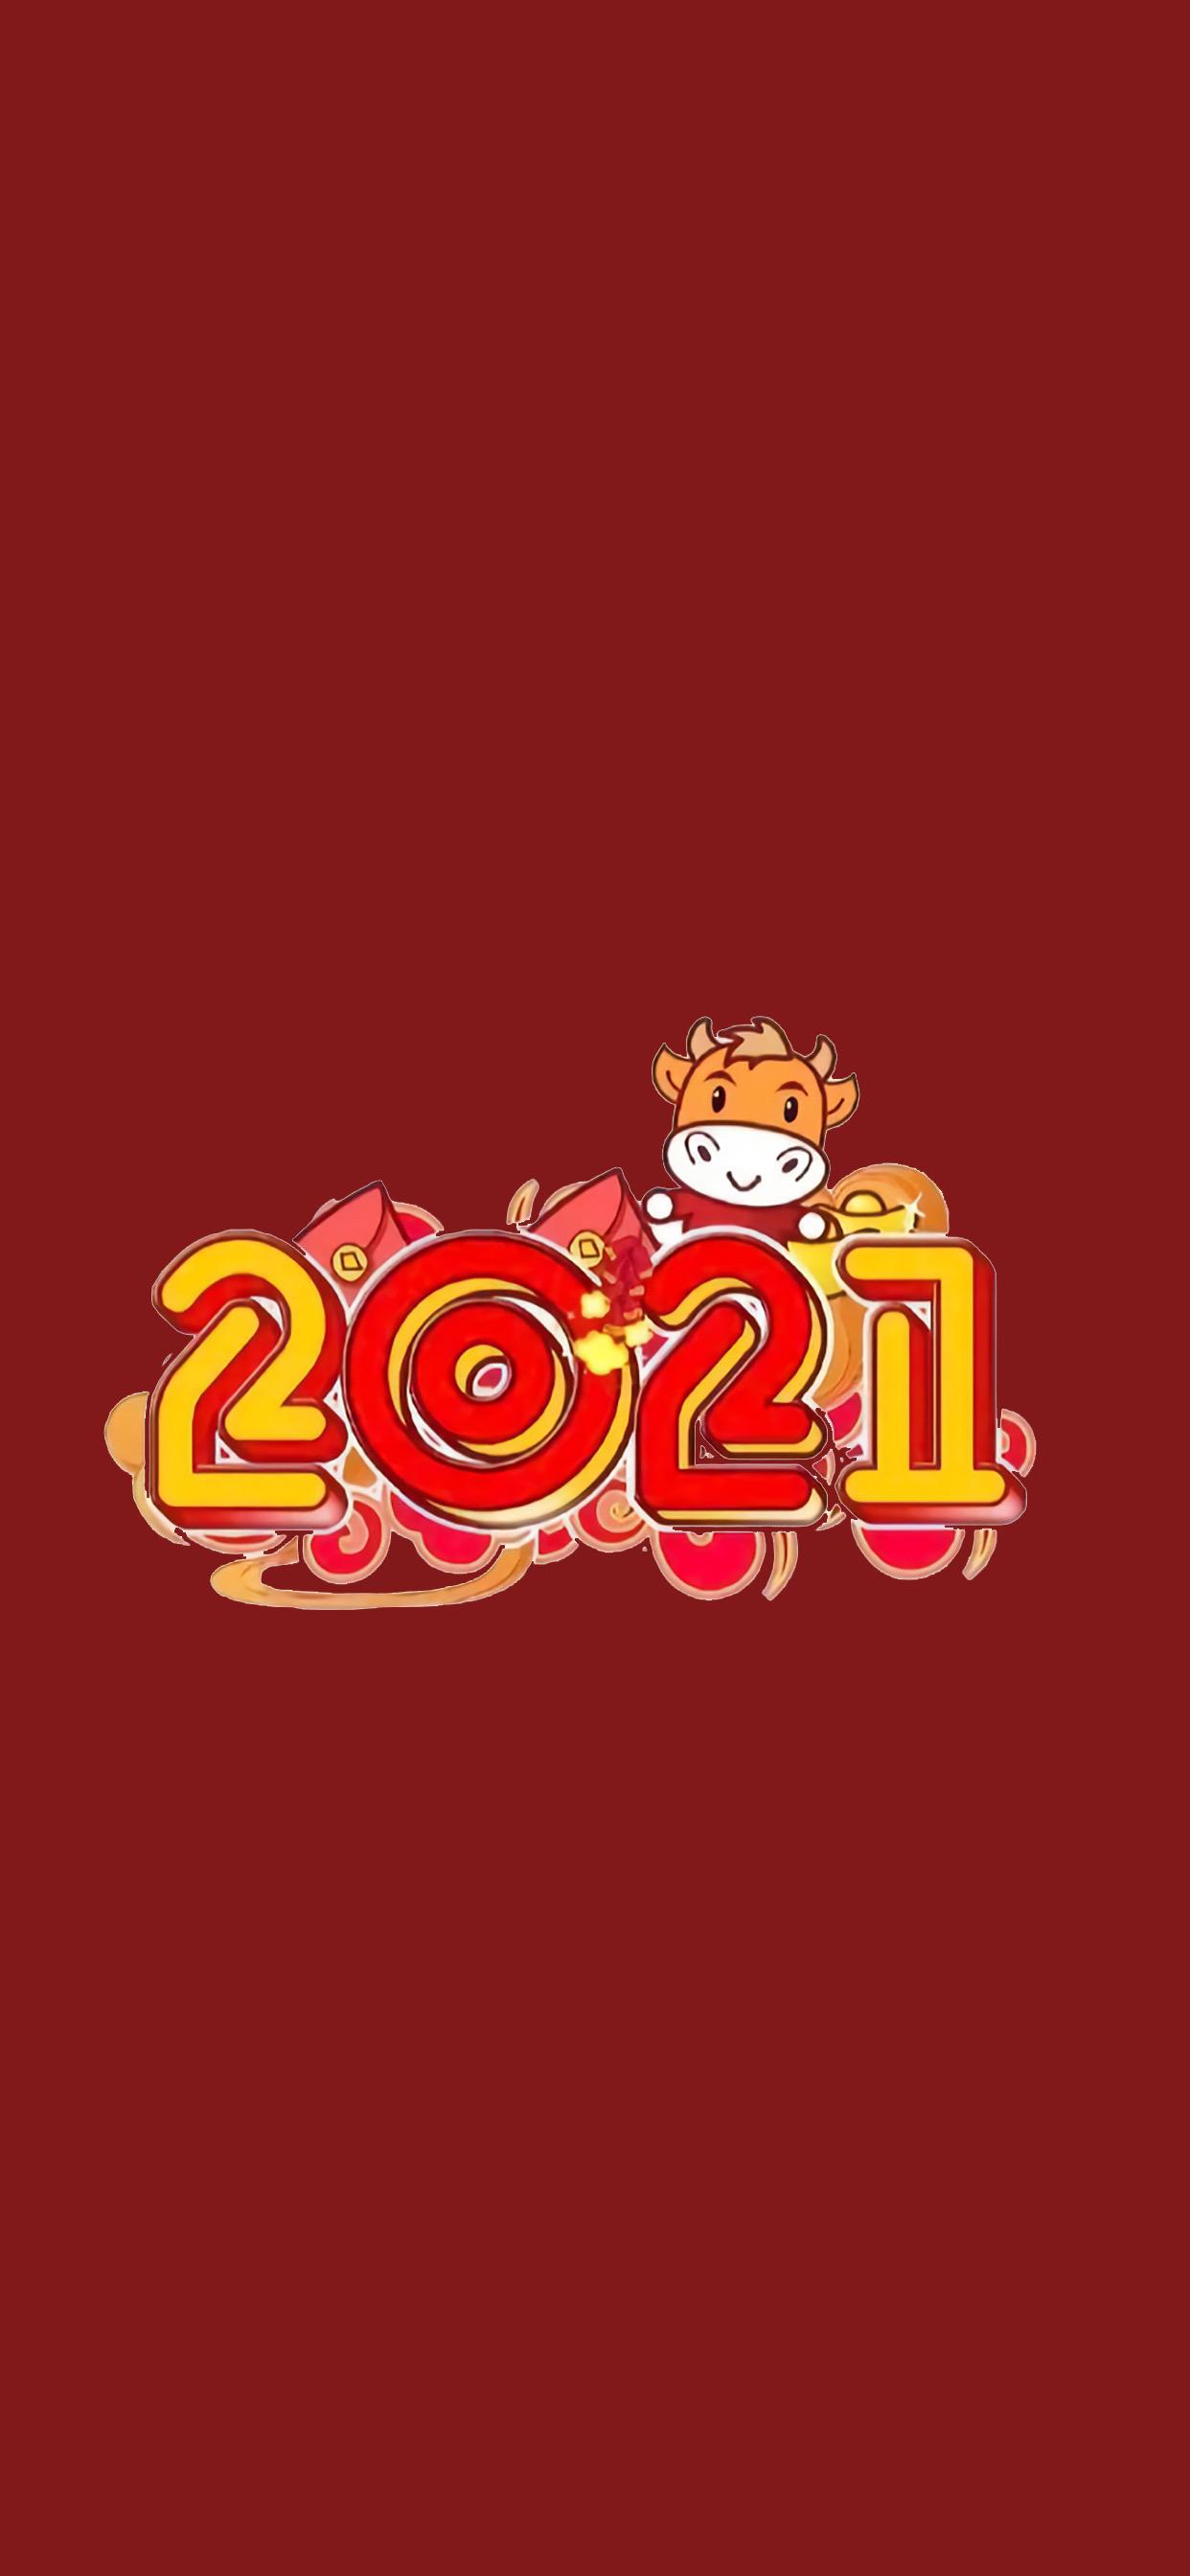 有什么好的跨年壁纸可以在 12 月 31 日换上,告别 2020 迎接 2021?